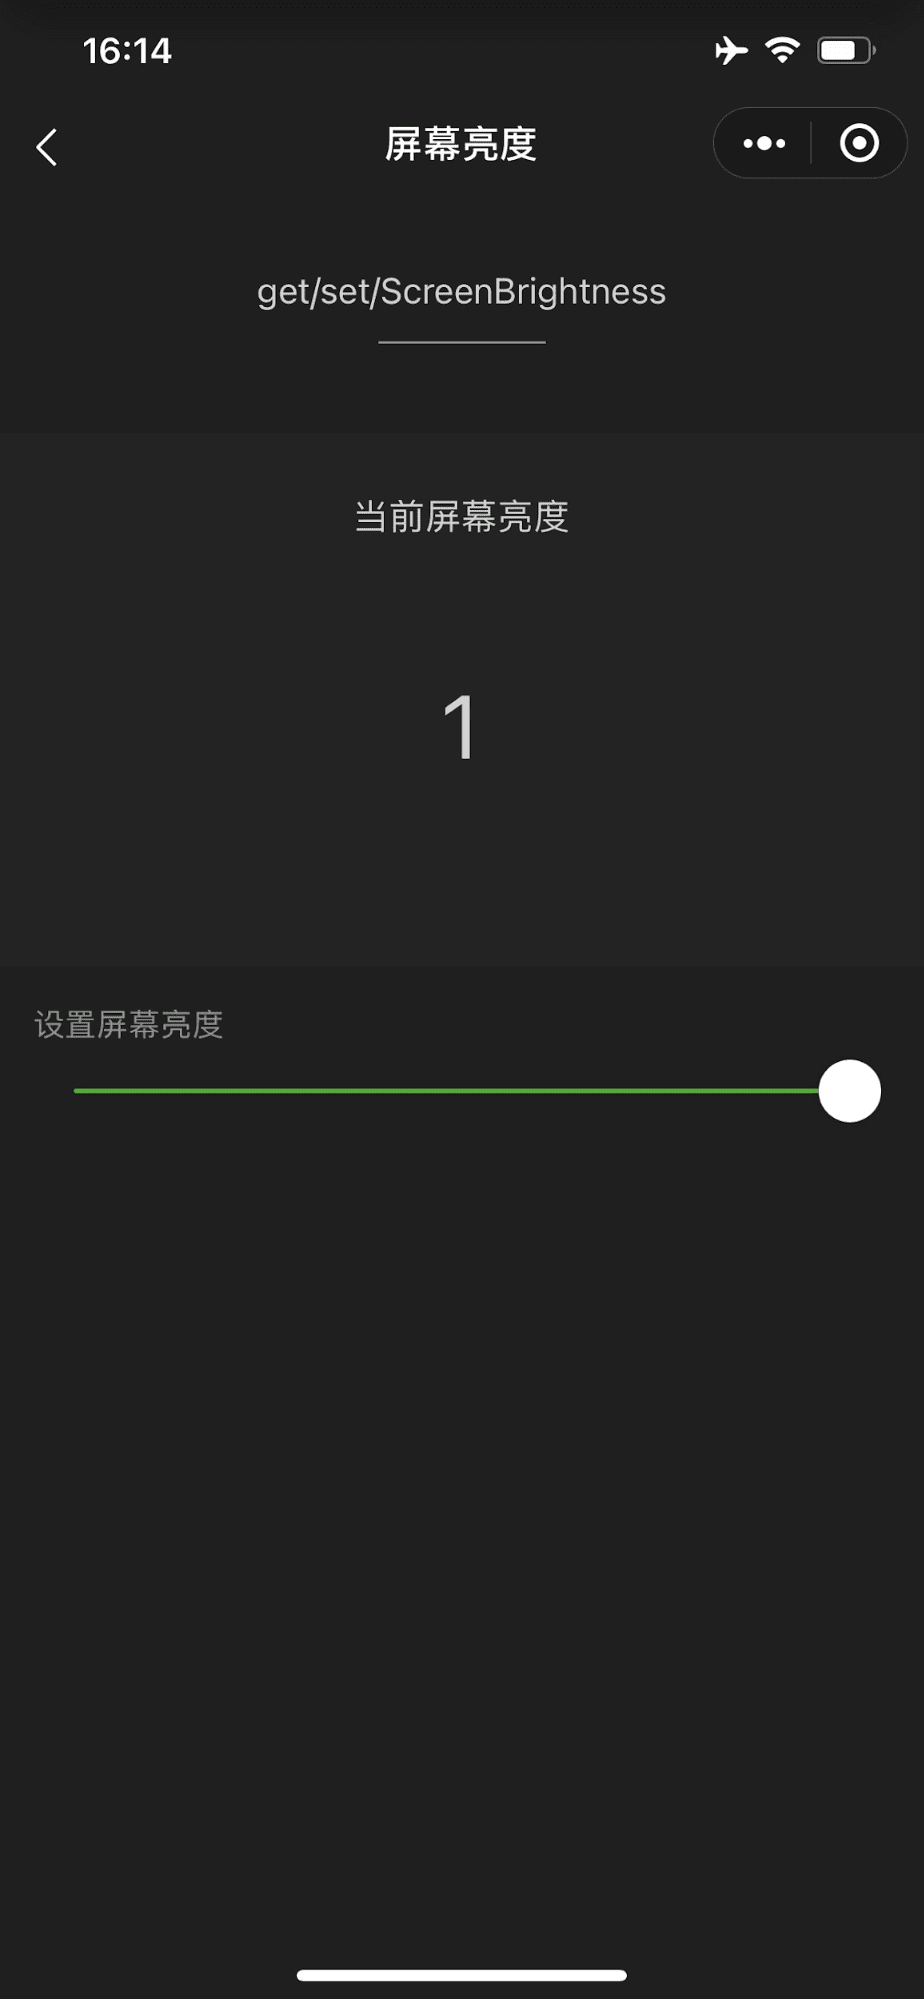 La miniapp de demostración de WeChat que muestra un control deslizante que controla el brillo de la pantalla del dispositivo al máximo.